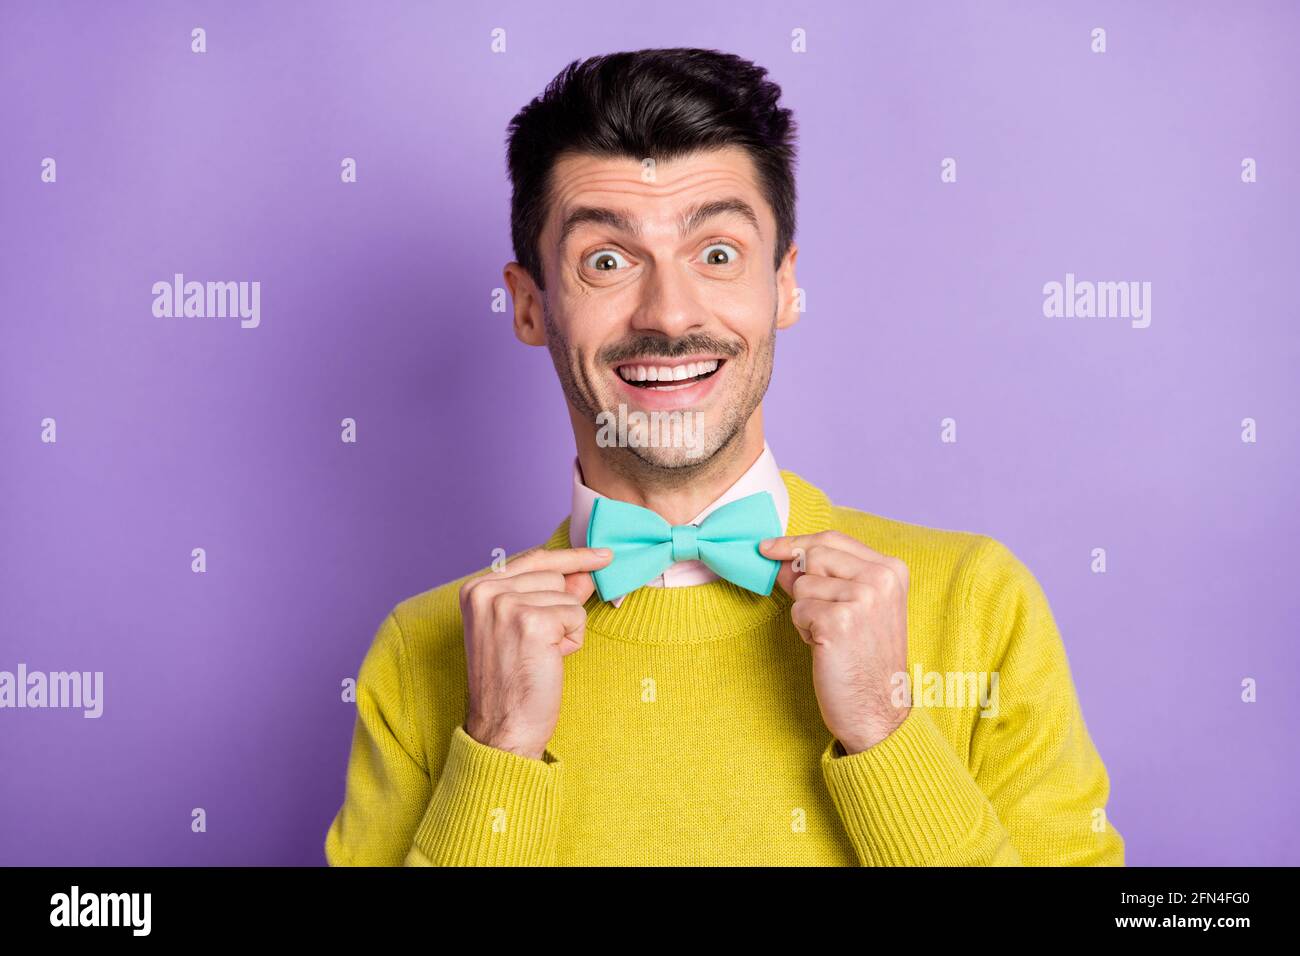 Portrait de brunet optimiste gars touch cravate porter chandail jaune isolé  sur fond de couleur lilas pastel Photo Stock - Alamy